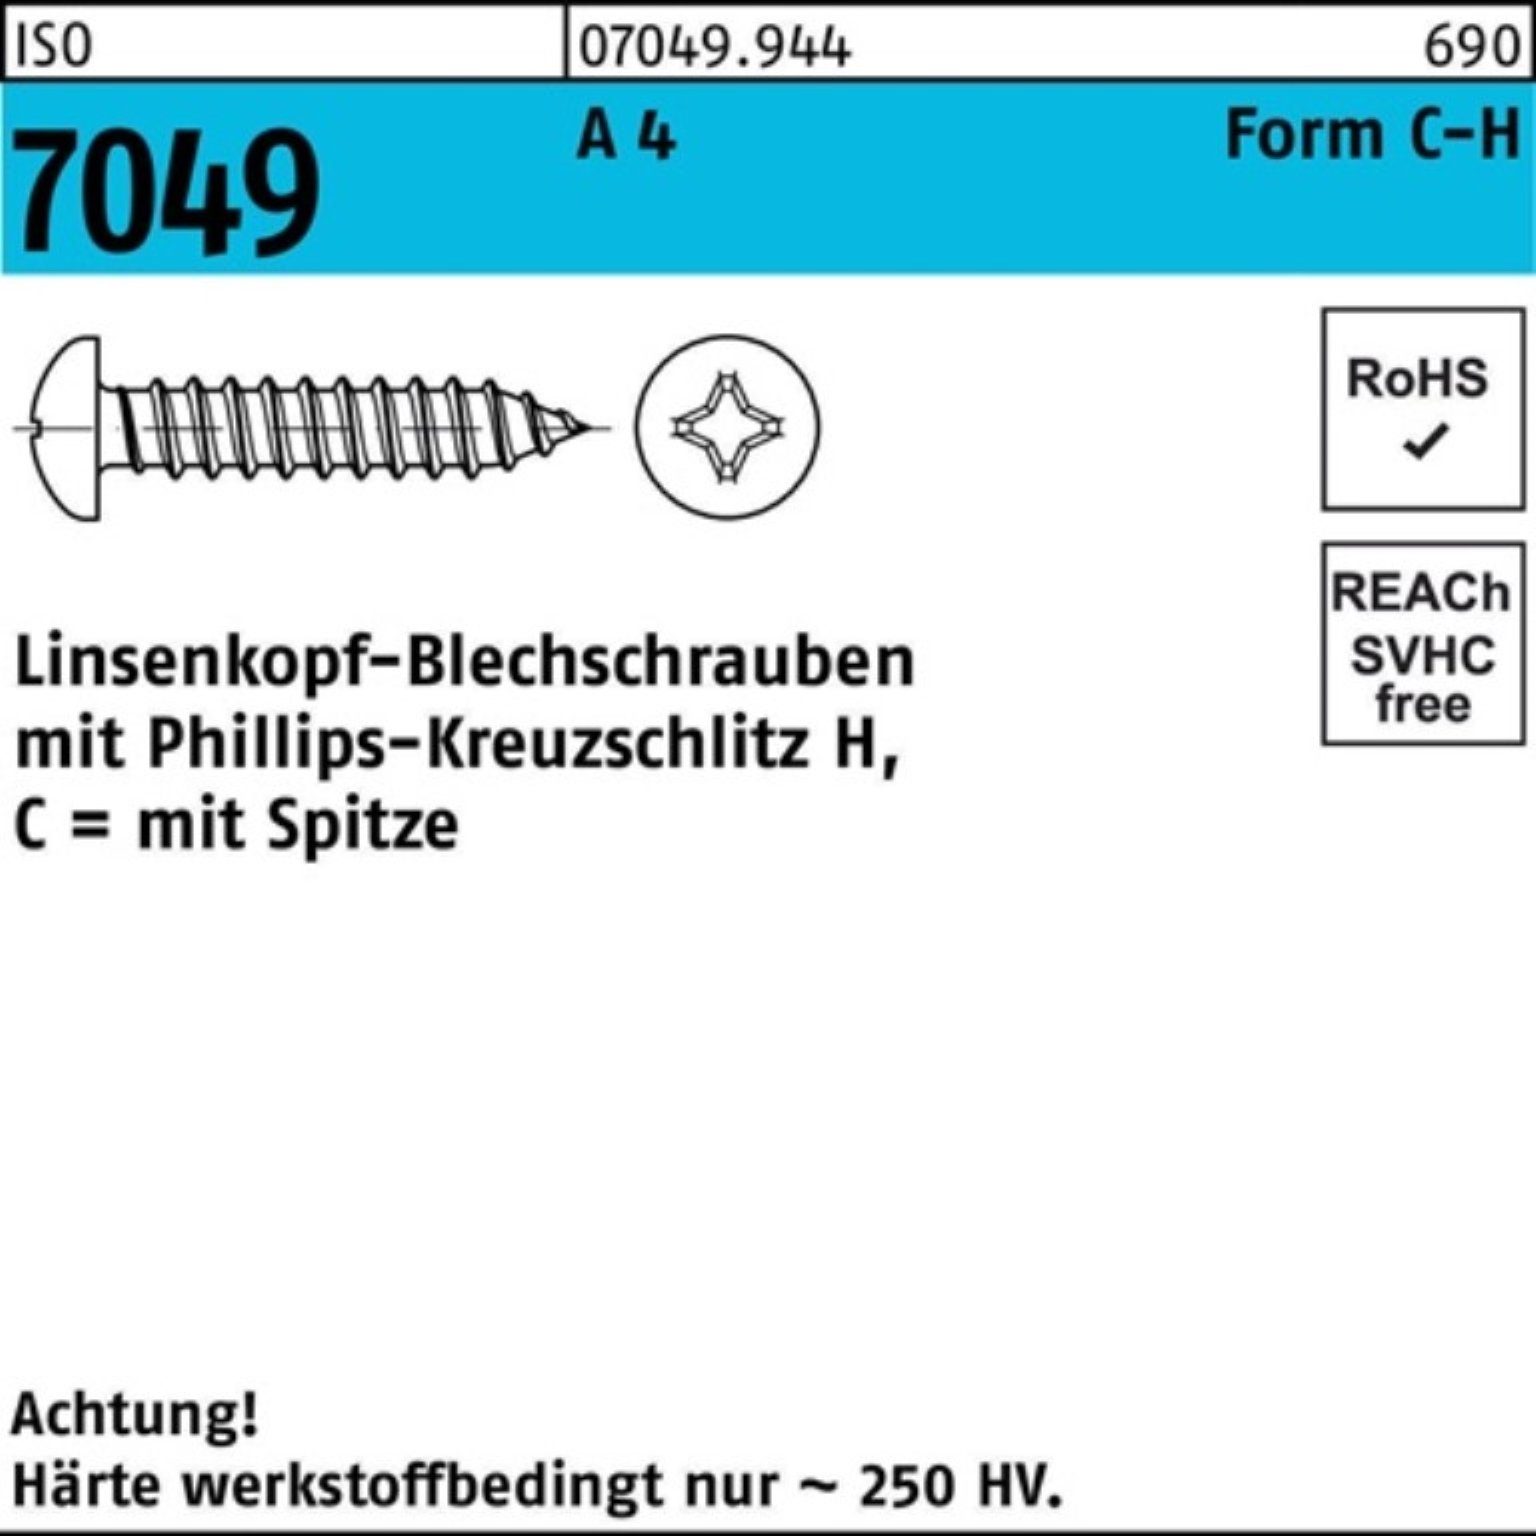 C Pack 500 500er ISO Spitze/PH 4,2x S Blechschraube LIKO A Reyher 4 Blechschraube 7049 19-H